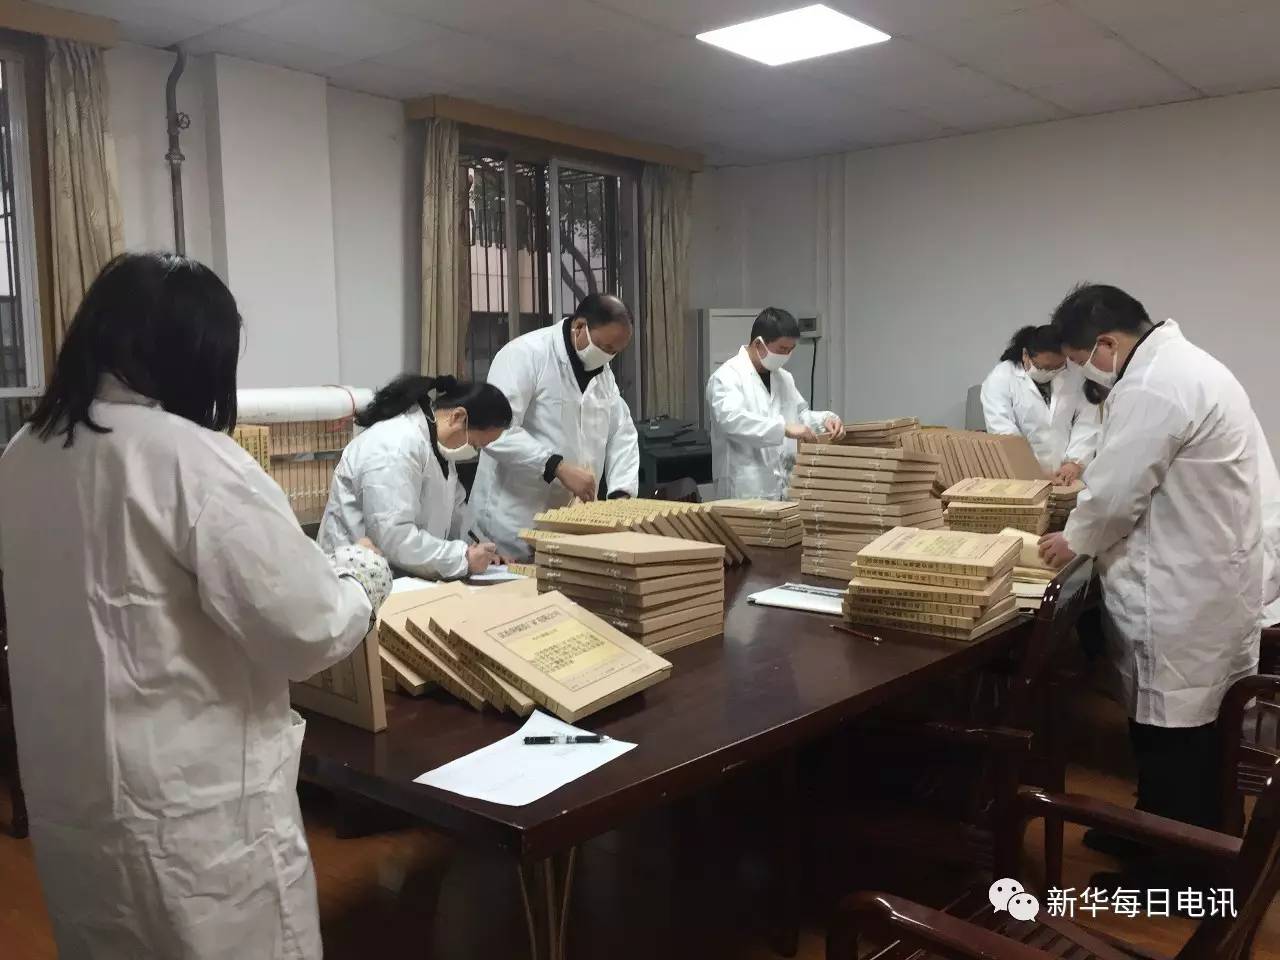 湖北省的档案事业,只跟特定的部门打交道,从政府机关收集档案,归档